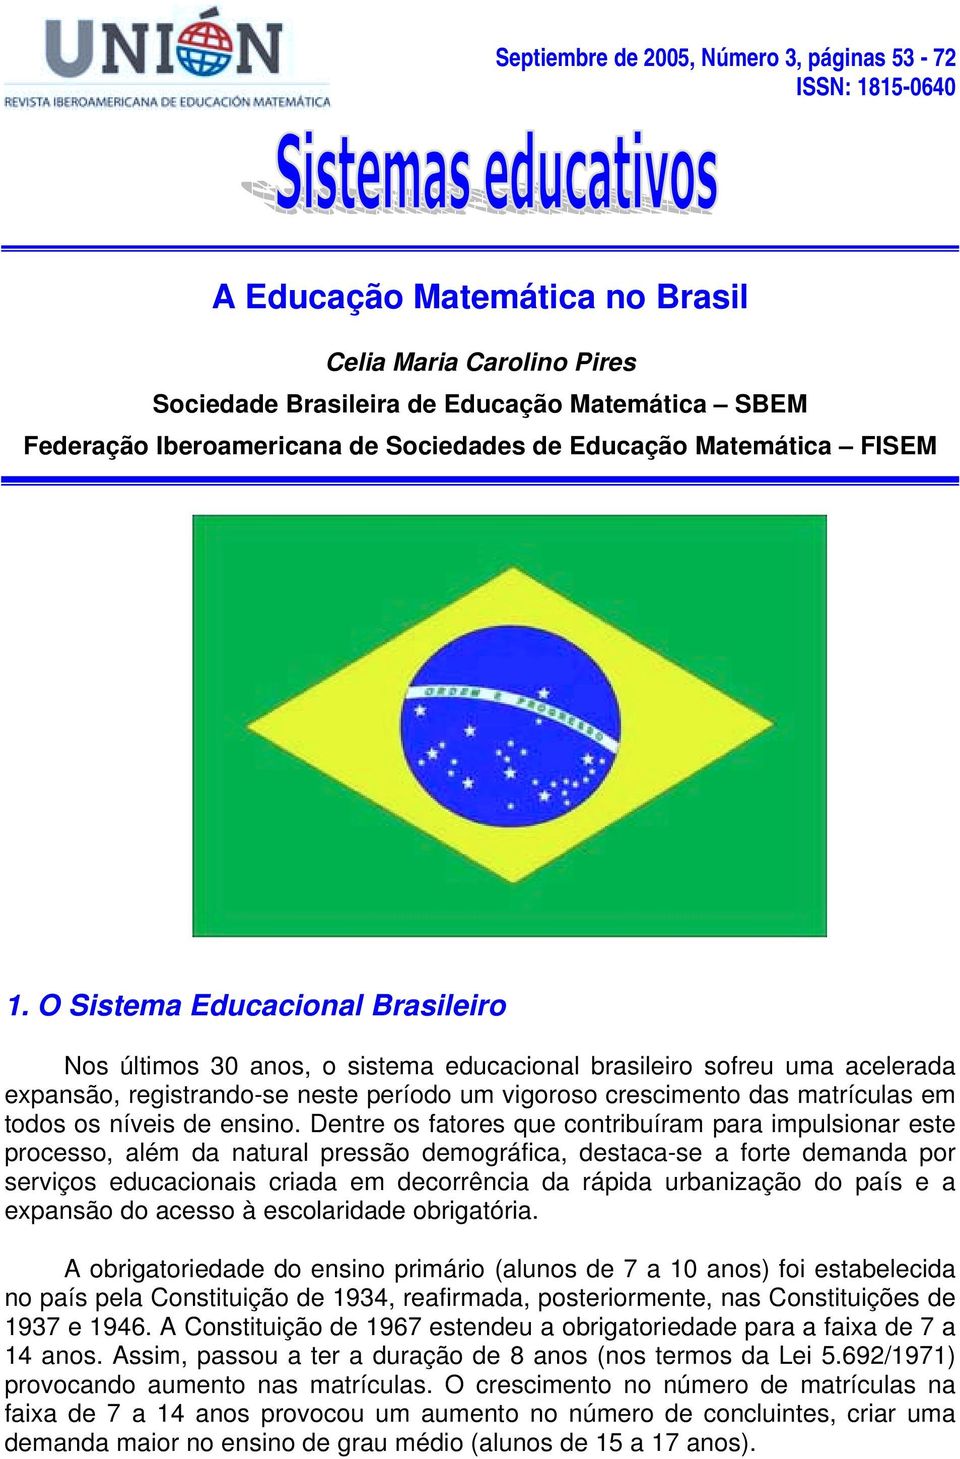 O Sistema Educacional Brasileiro Nos últimos 30 anos, o sistema educacional brasileiro sofreu uma acelerada expansão, registrando-se neste período um vigoroso crescimento das matrículas em todos os